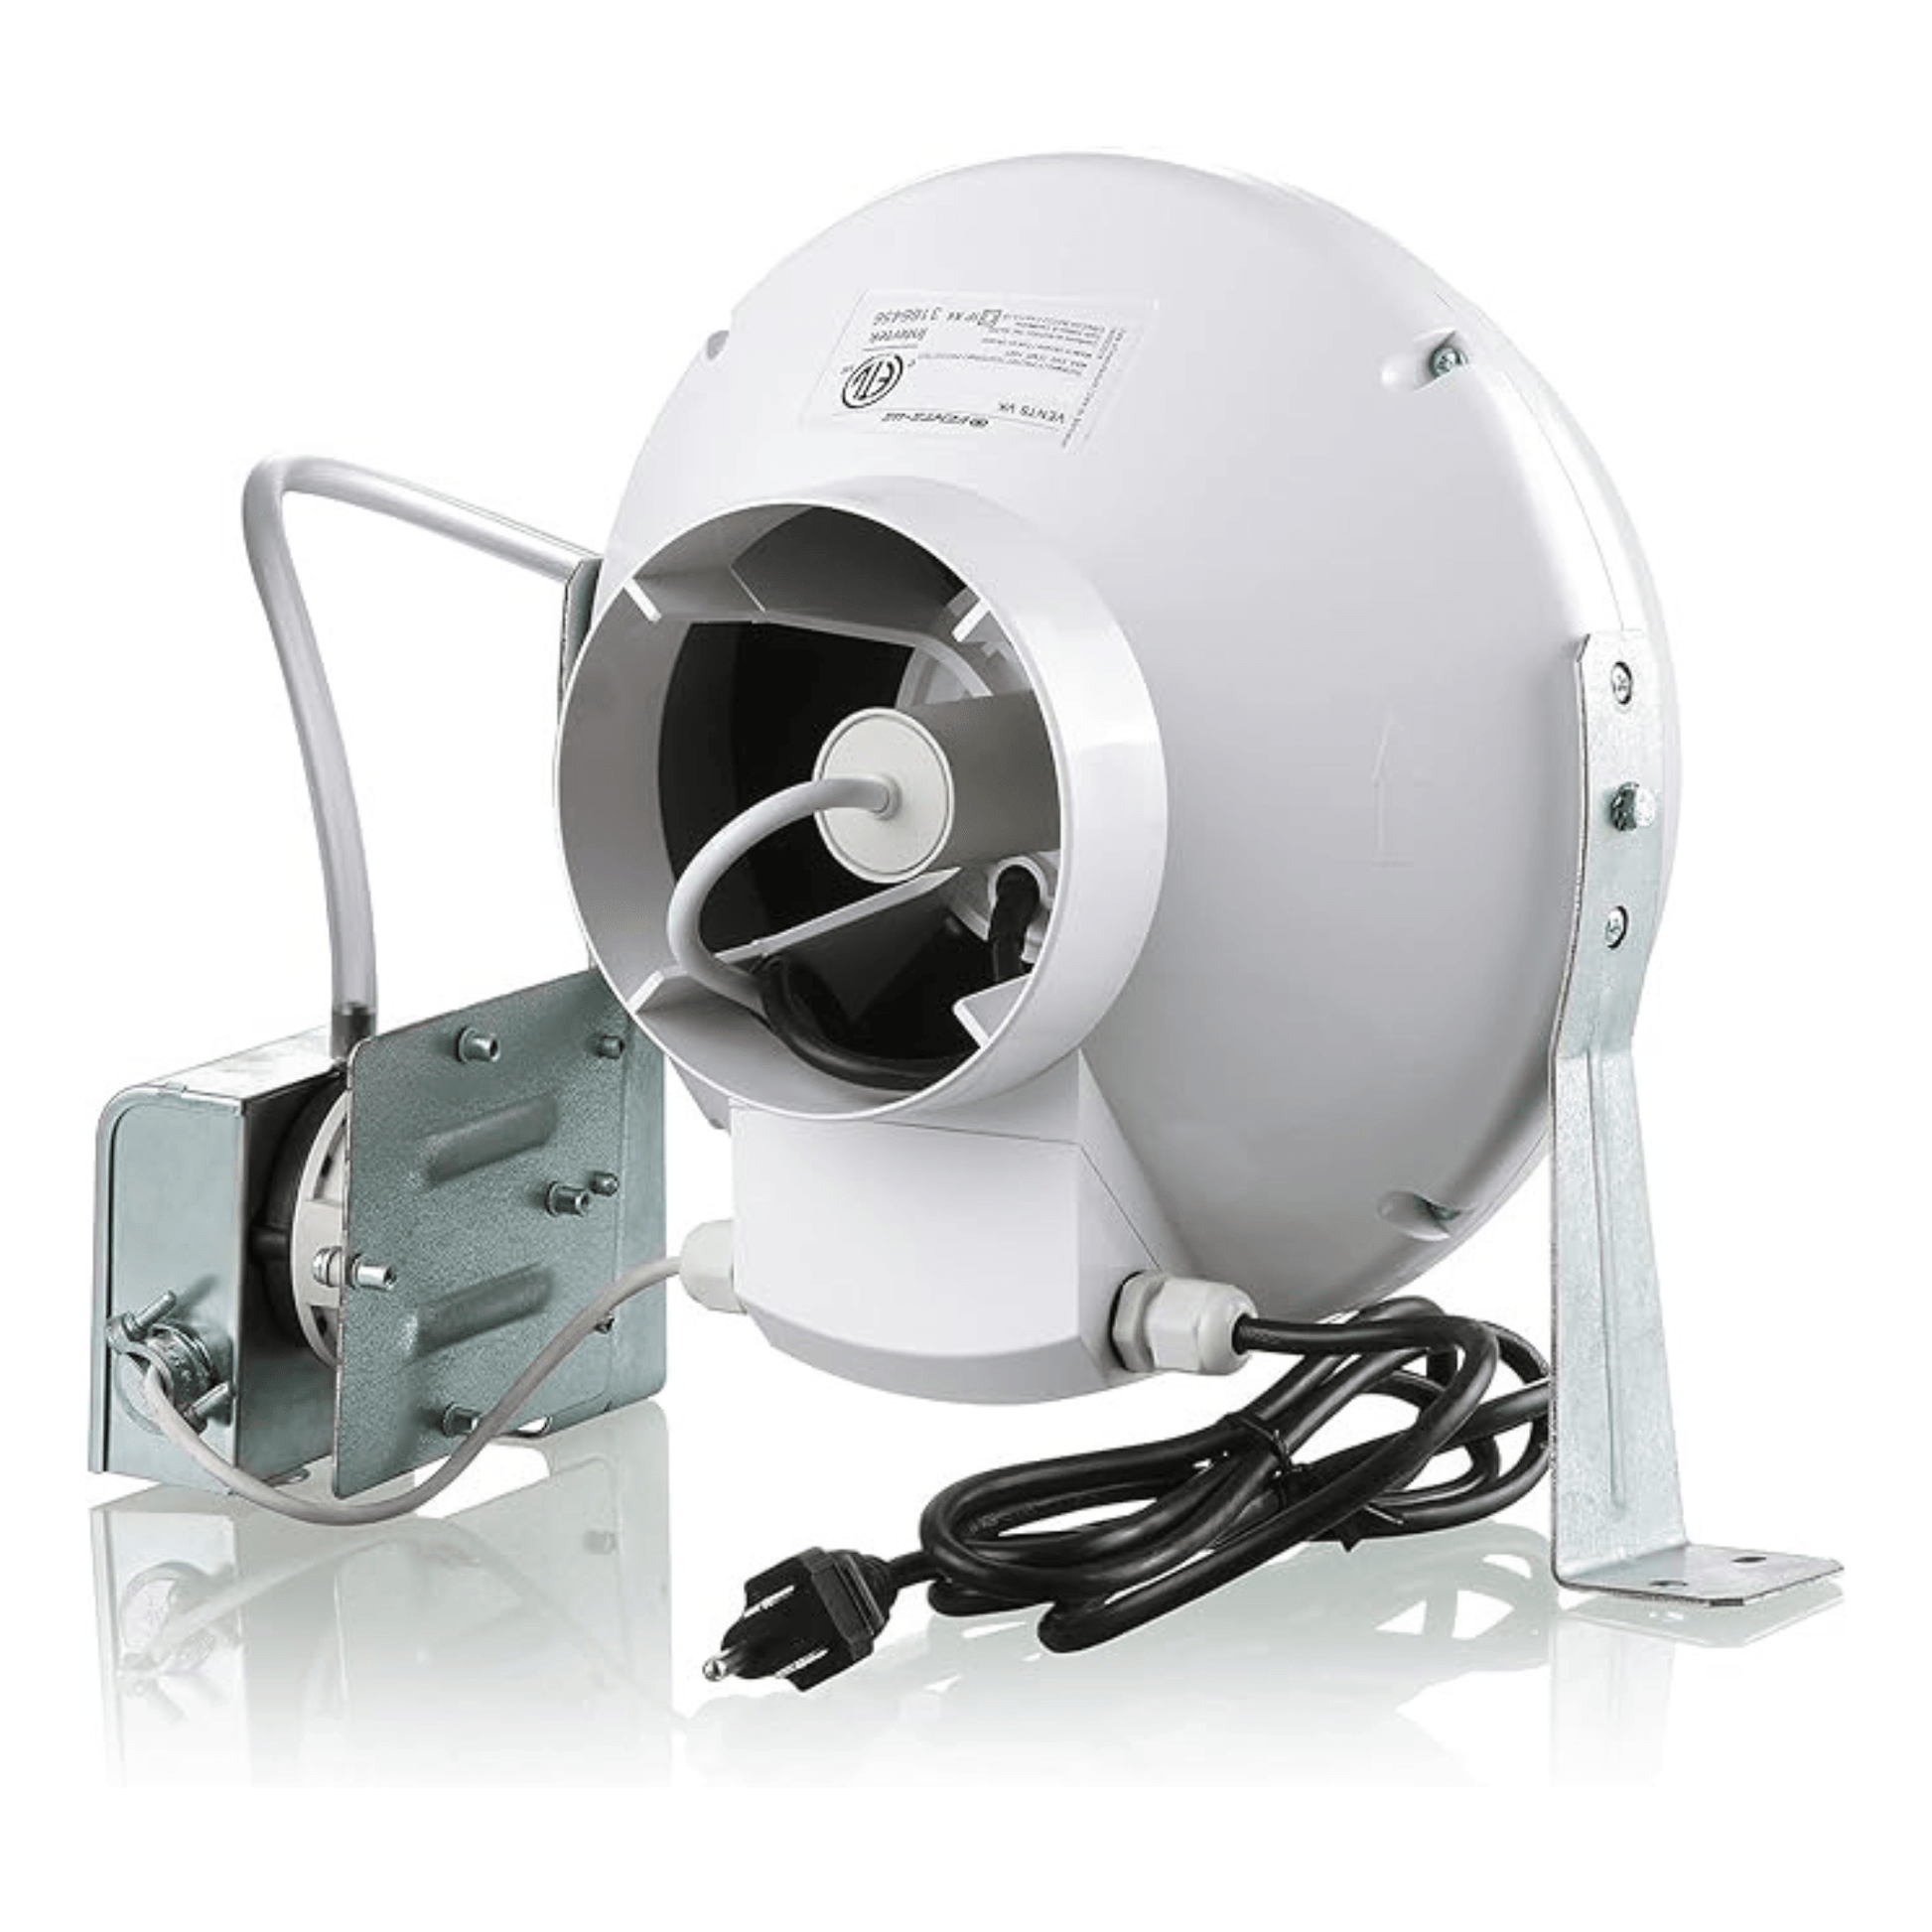 RV booster vent Fan by P.Tech